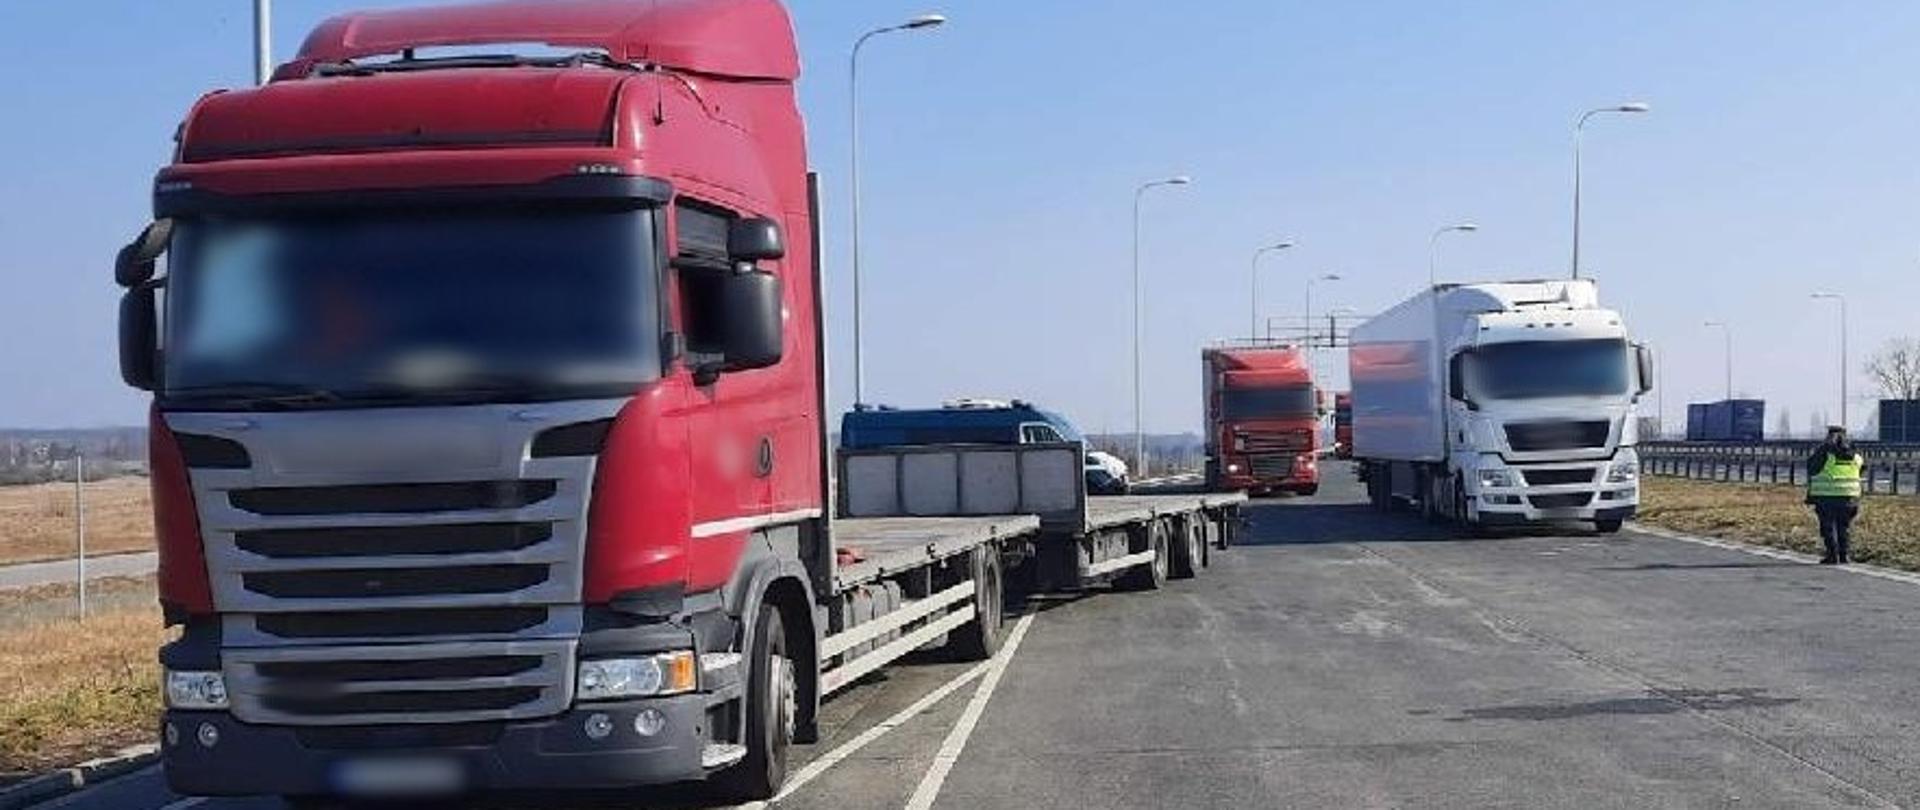 Zatrzymane ciężarówki stoją w punkcie kontrolnym przy drodze ekspresowej S8. W tle widoczny radiowóz ITD typu furgon. 